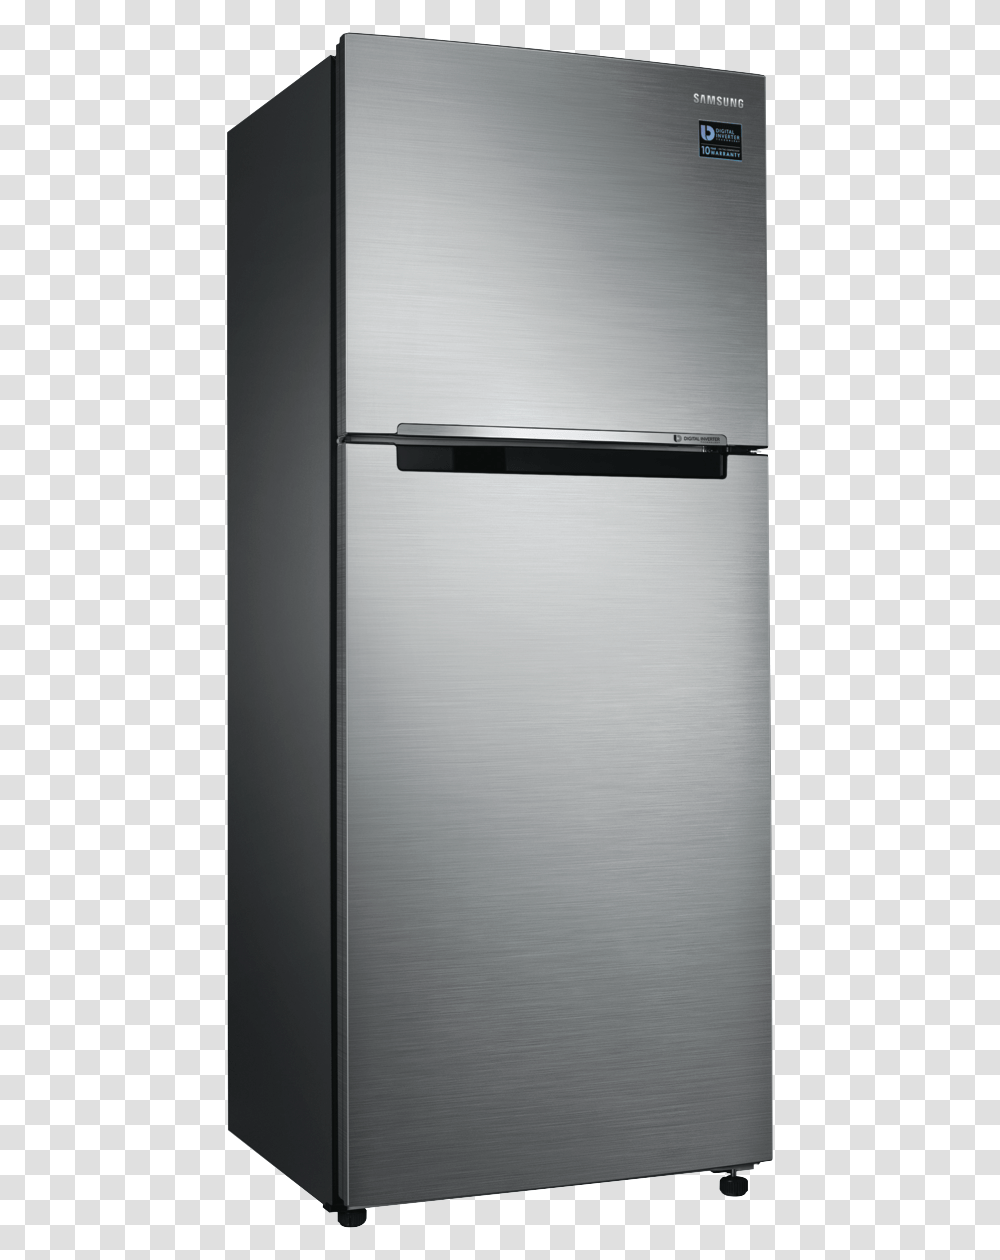 Samsung Refrigerator 345 L, Appliance, Dishwasher Transparent Png